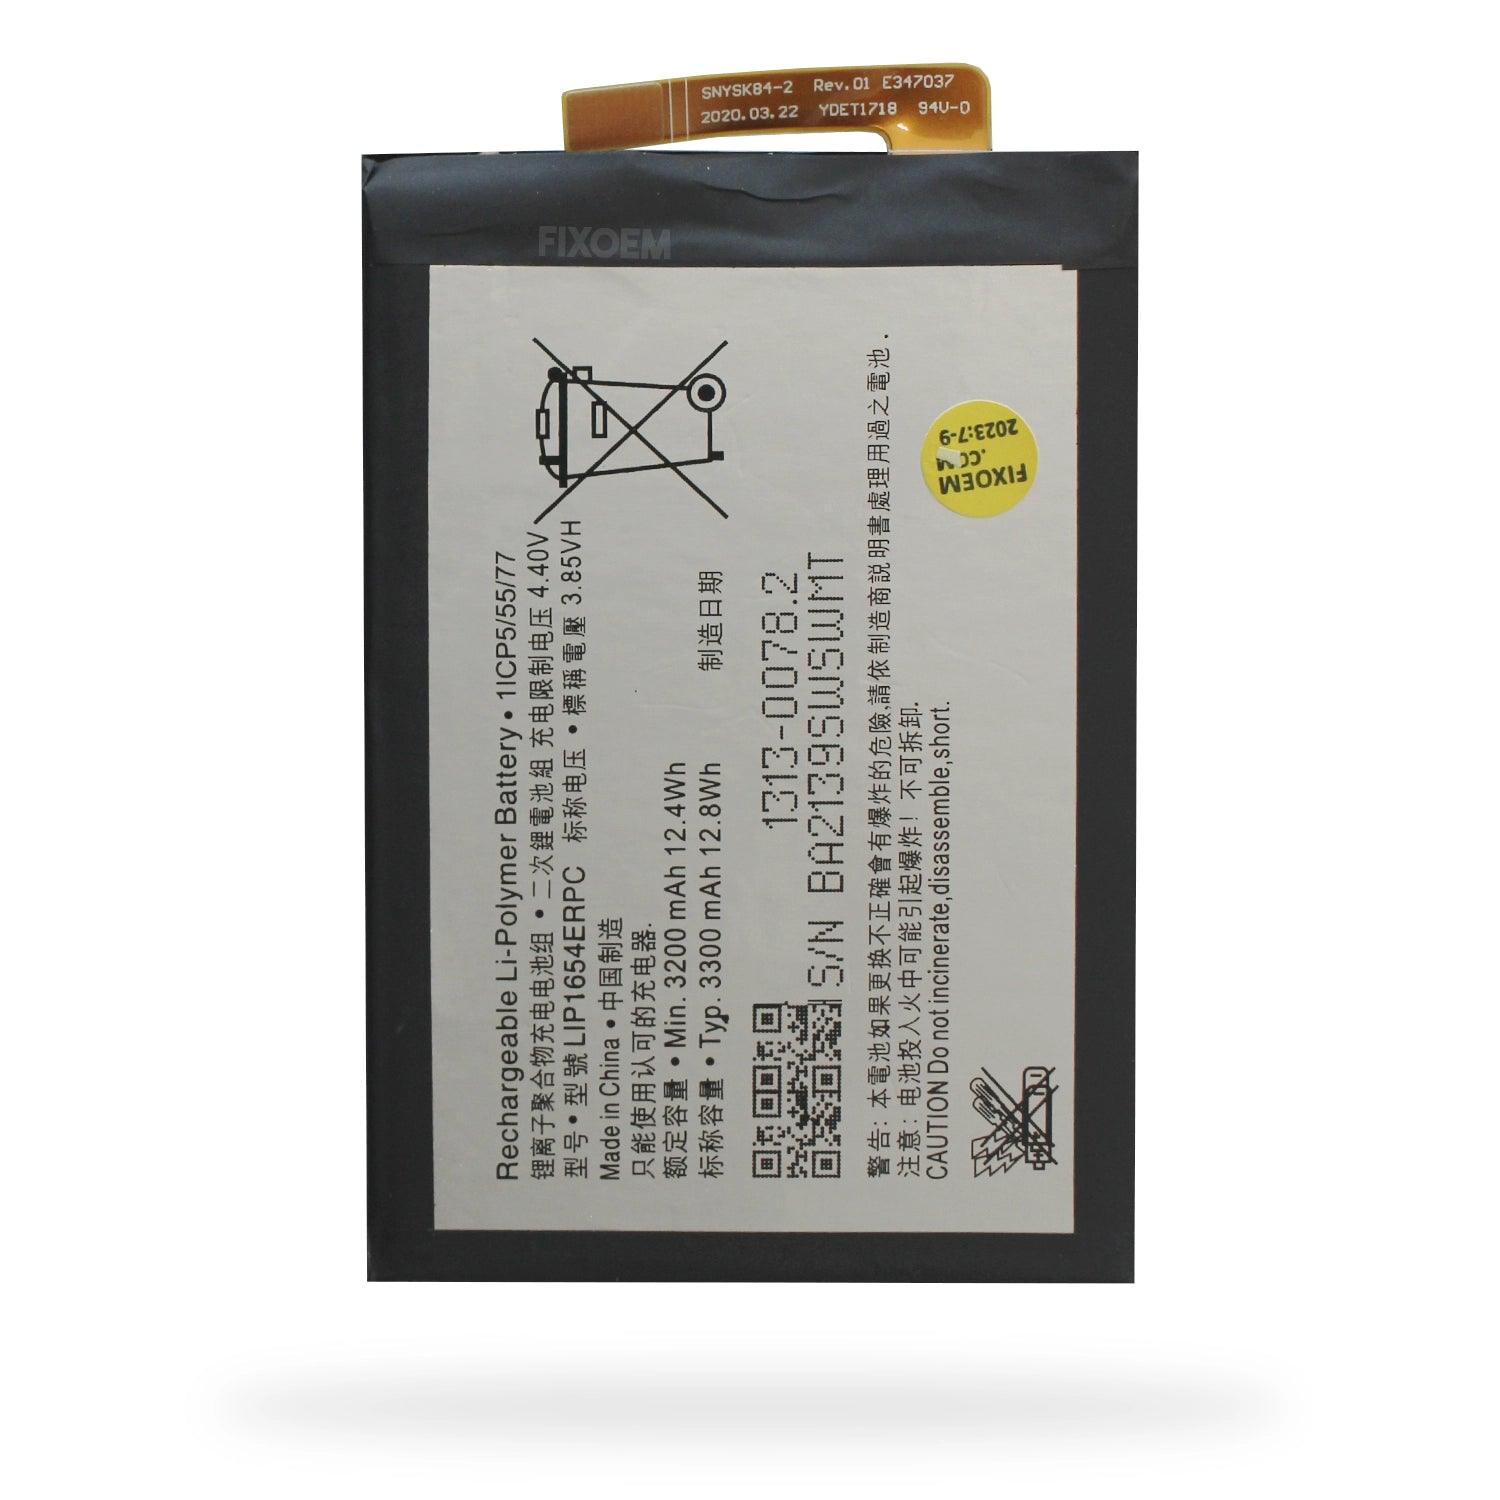 Bateria Sony Xperia L2 / Xperia Xa2 H4331 H3321 Lip1654Erpc. a solo $ 130.00 Refaccion y puestos celulares, refurbish y microelectronica.- FixOEM